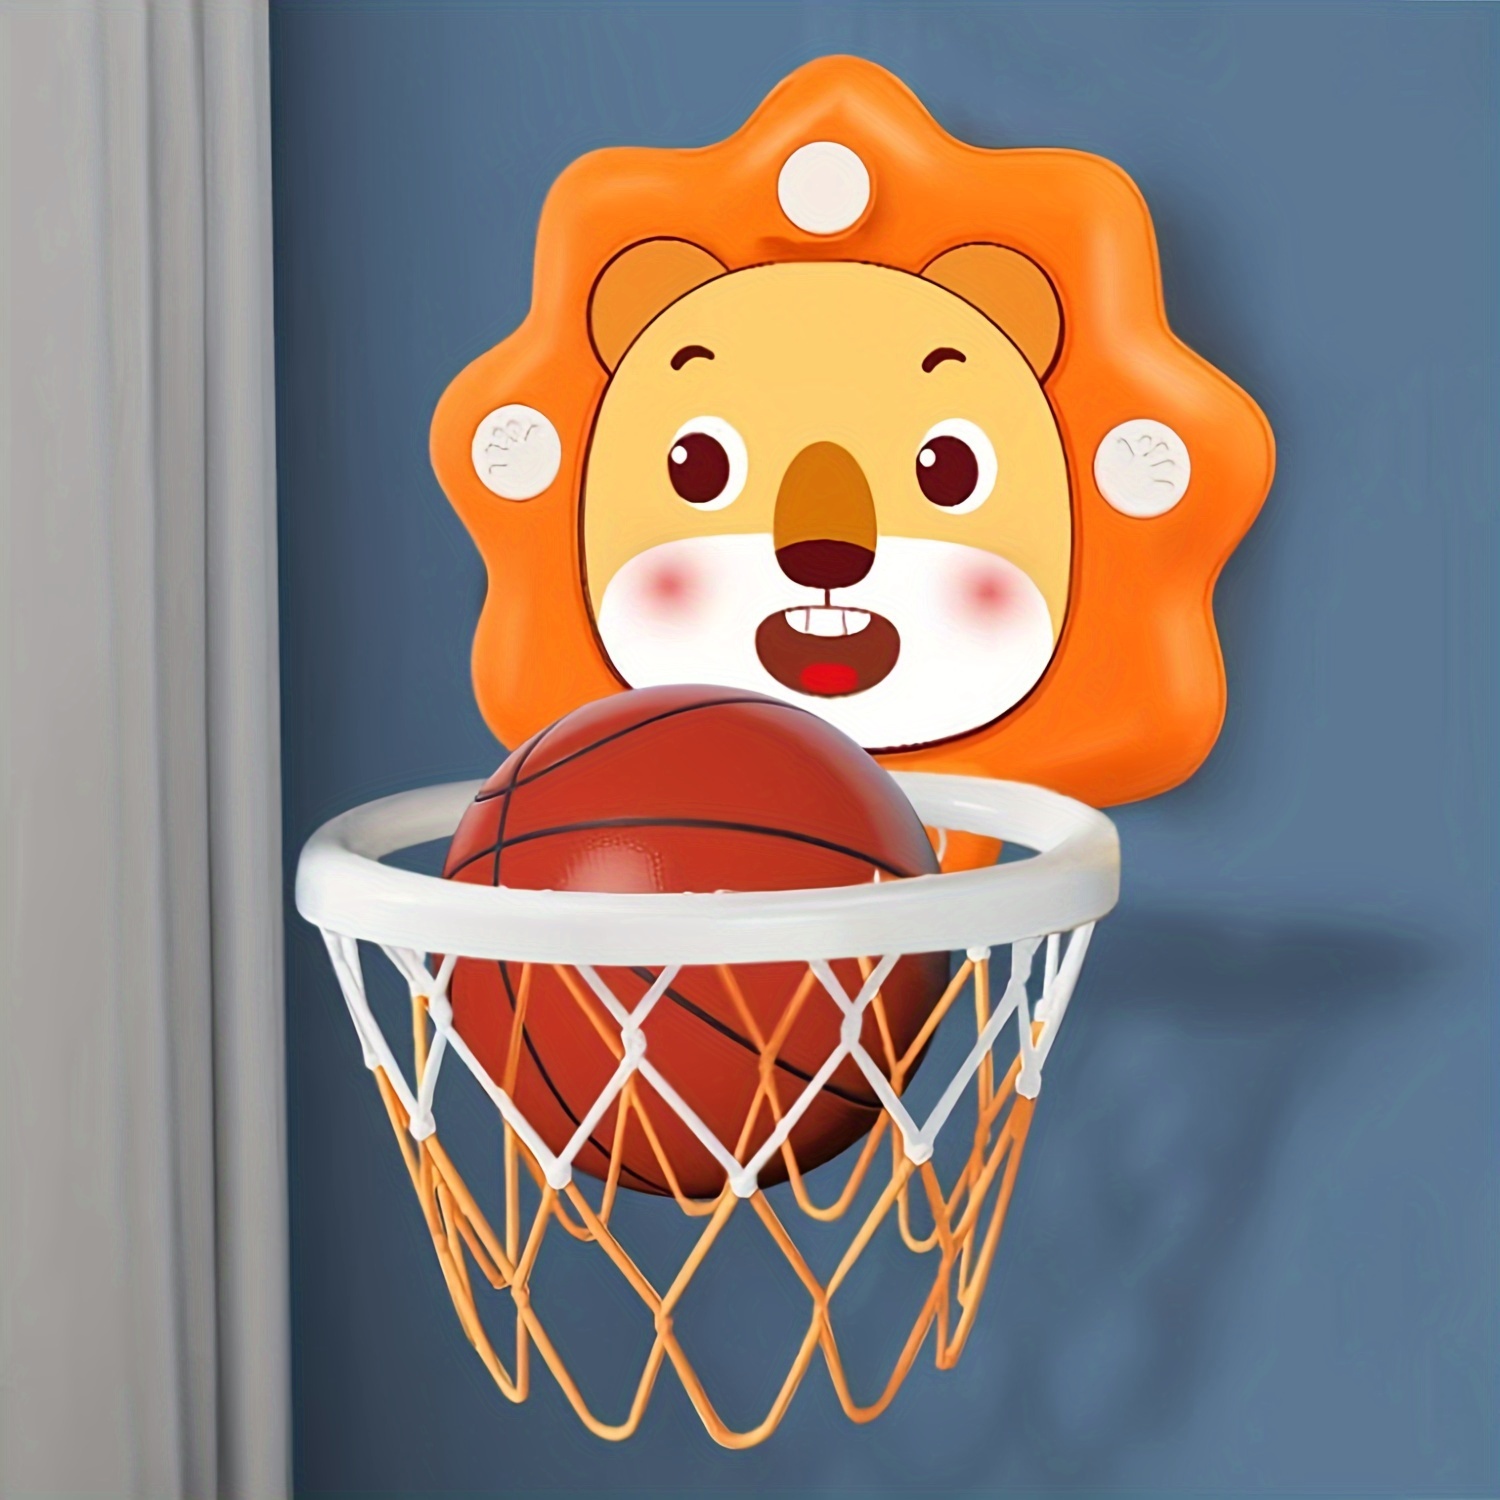 Canasta De Basketball Basquet Para Niños Ajustable Interior Exterior 3 A 8  Años